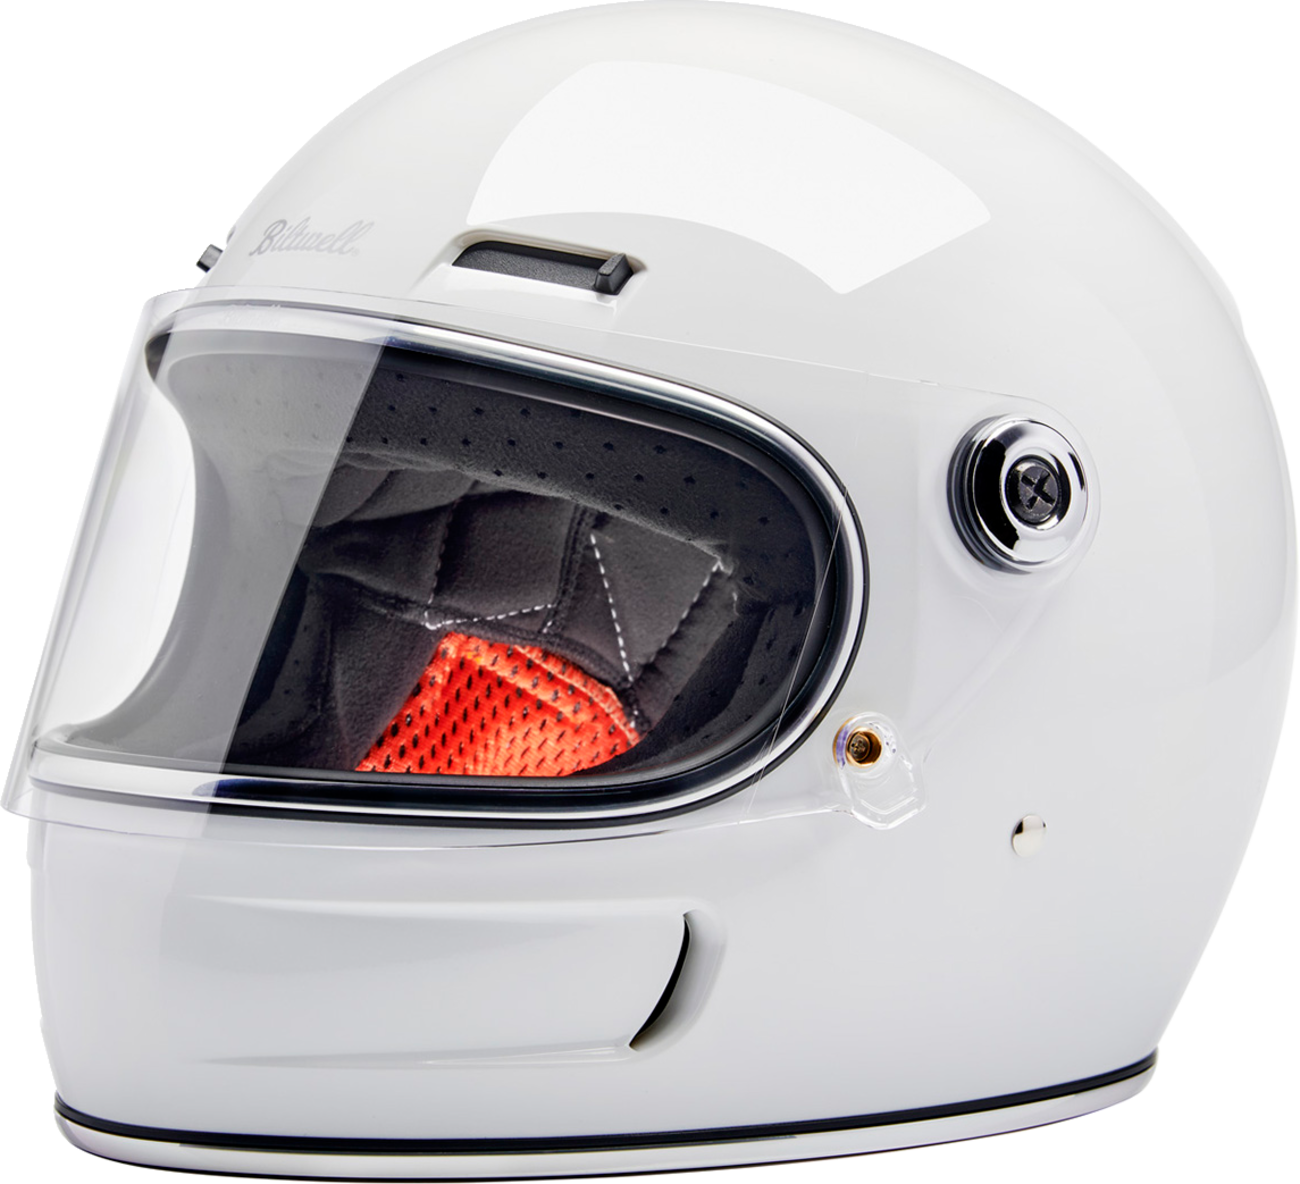 BILTWELL Gringo SV Helmet - Gloss White - Large 1006-104-504